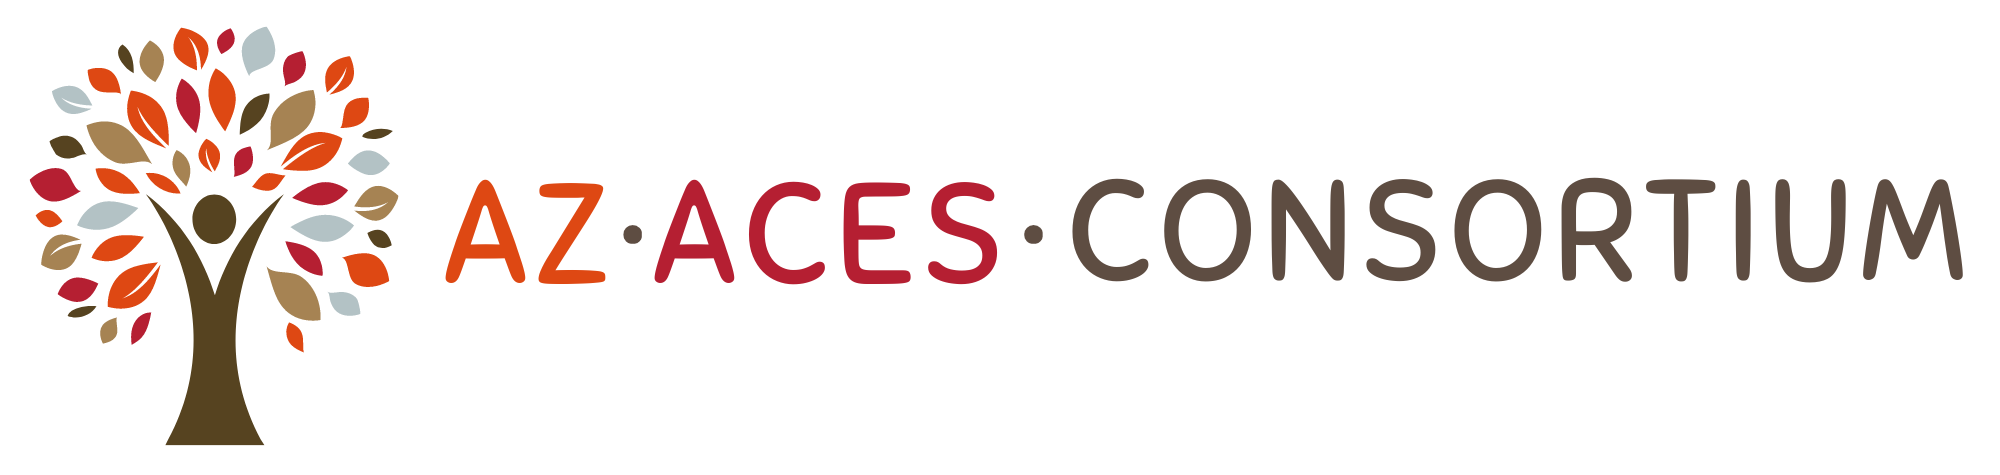 ACEs Consortium